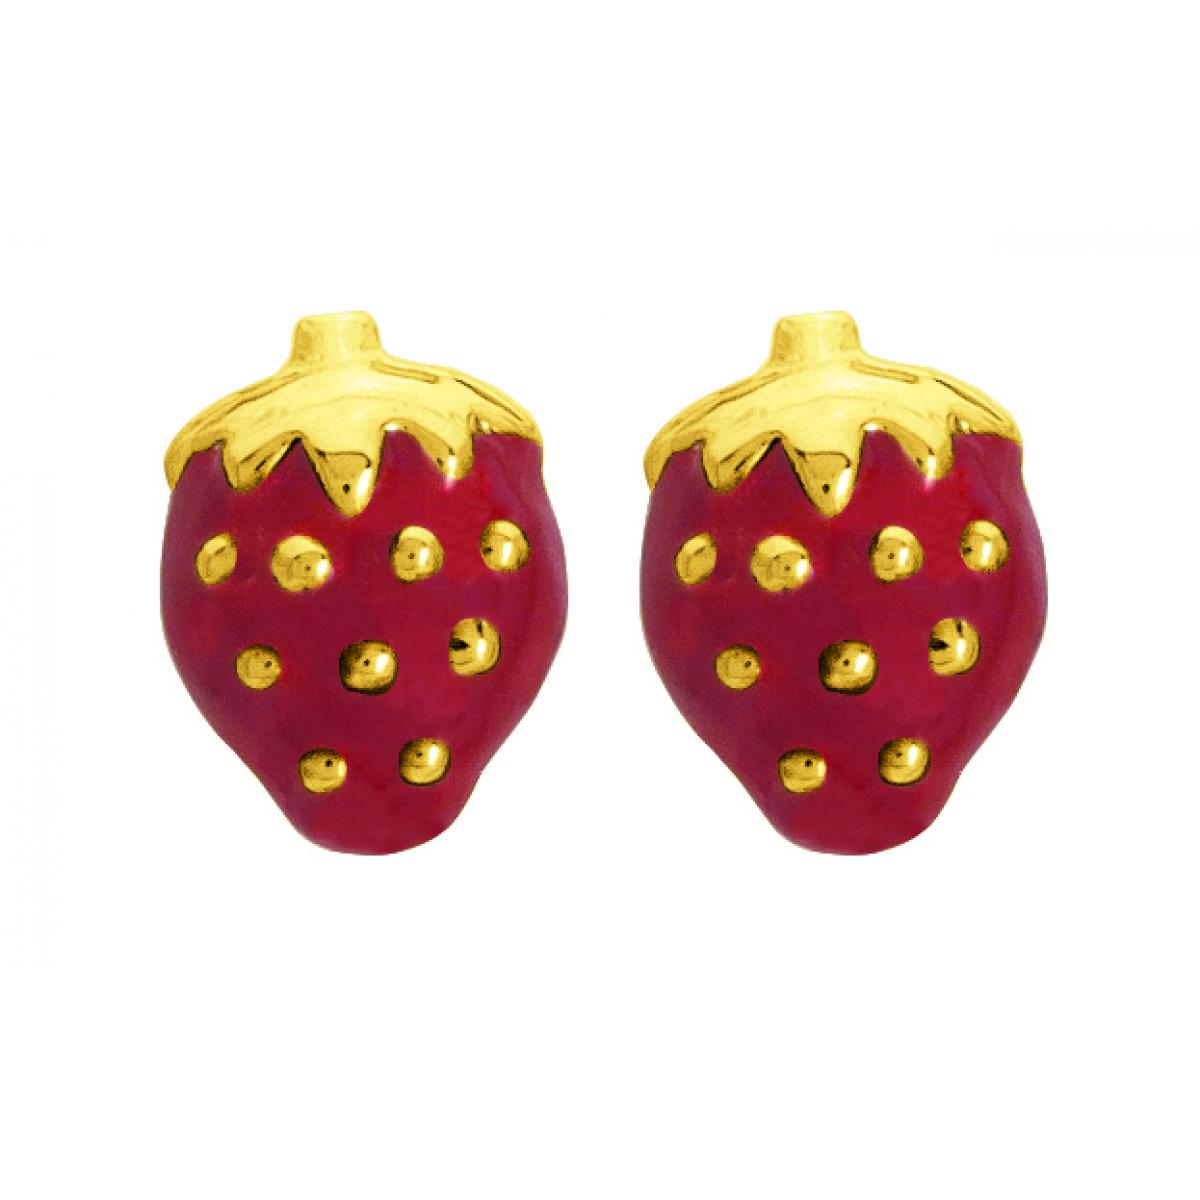 Boucles d'oreilles Fraises laquées rouges or 750/1000 jaune (18K) Doré Stella LES ESSENTIELS ENFANTS